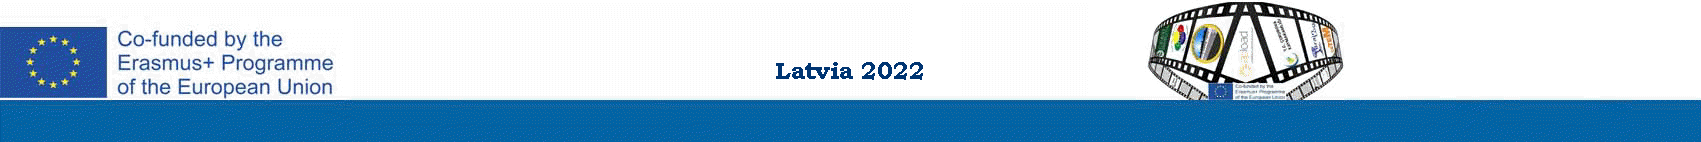 Meeting - Riga 2022